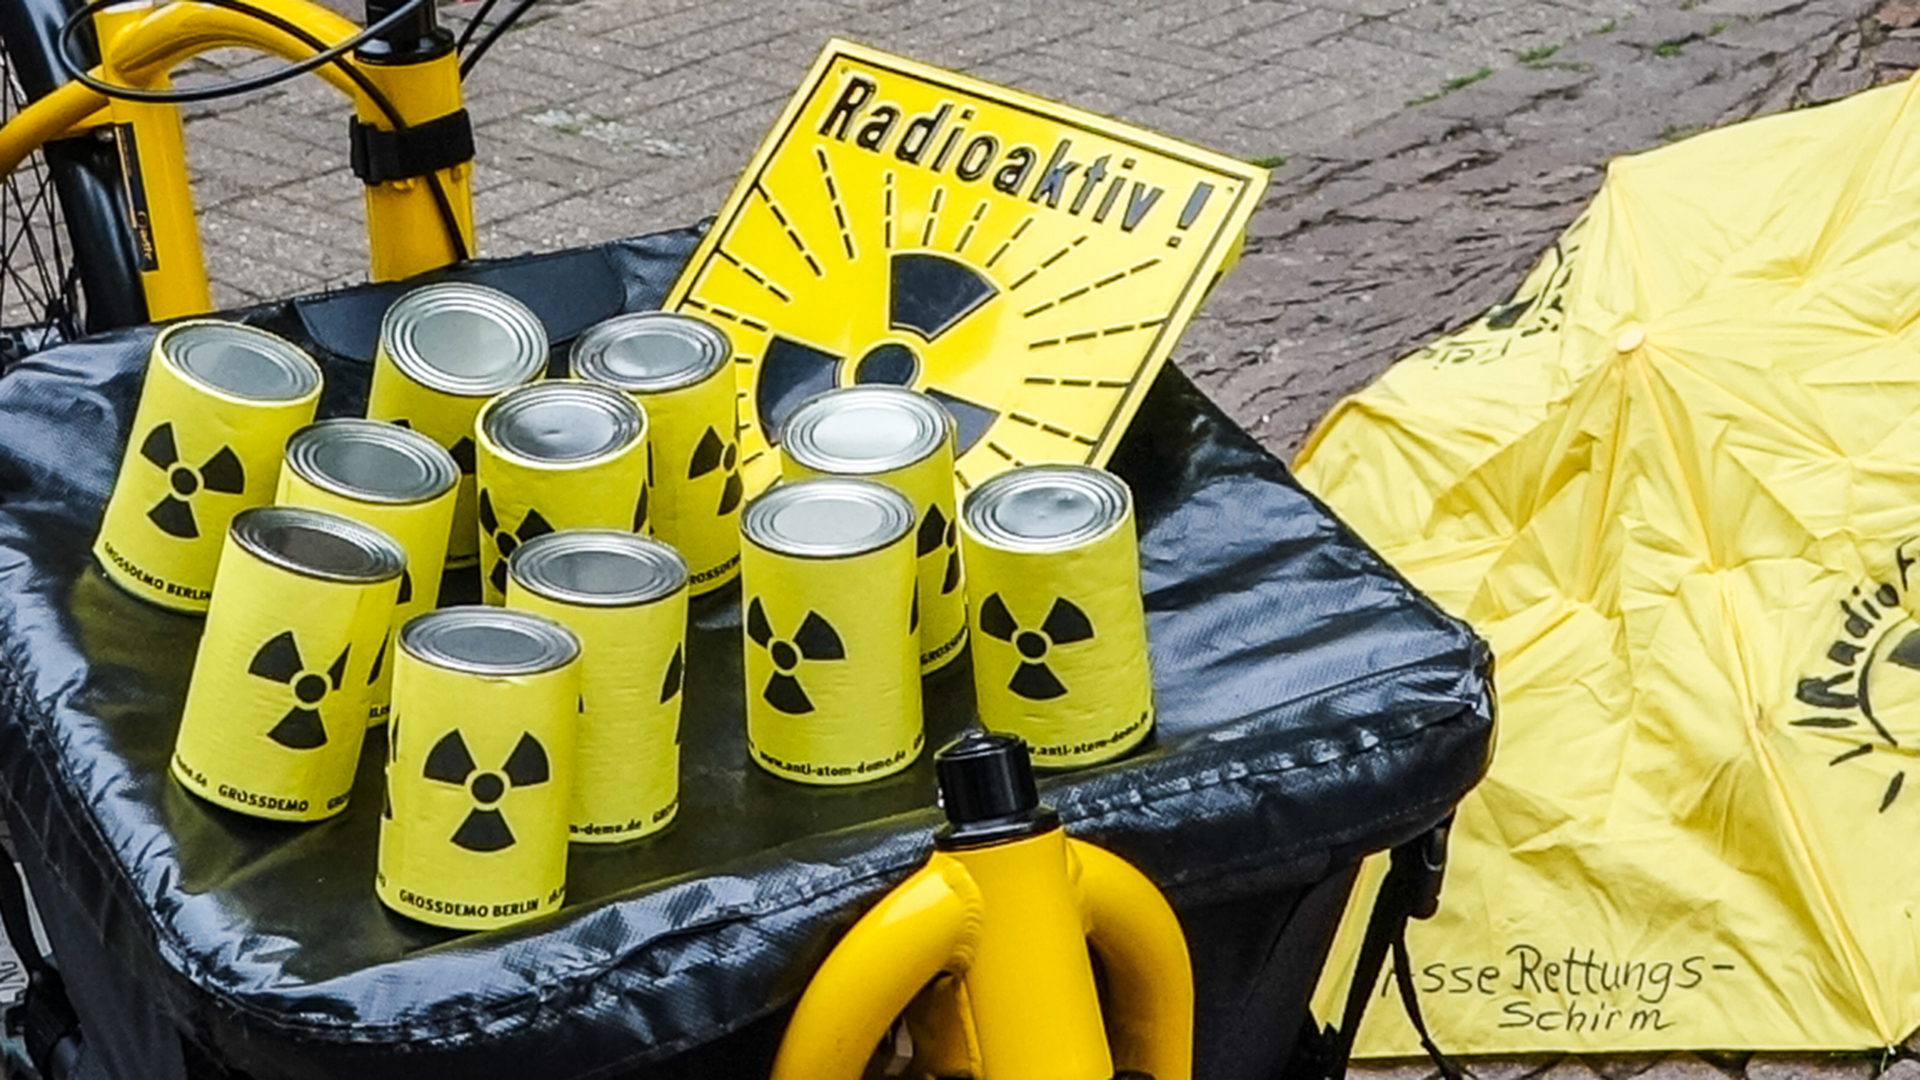 Auf dem Behälter eines Lastenrades stehen gelbe Dosen mit schwarzem Atom-Warn-Zeichen. Daneben liegt ein gelbes Schild mit gleichem Aufdruck wie die Dosen und dem Schriftzug "Radioaktiv!"